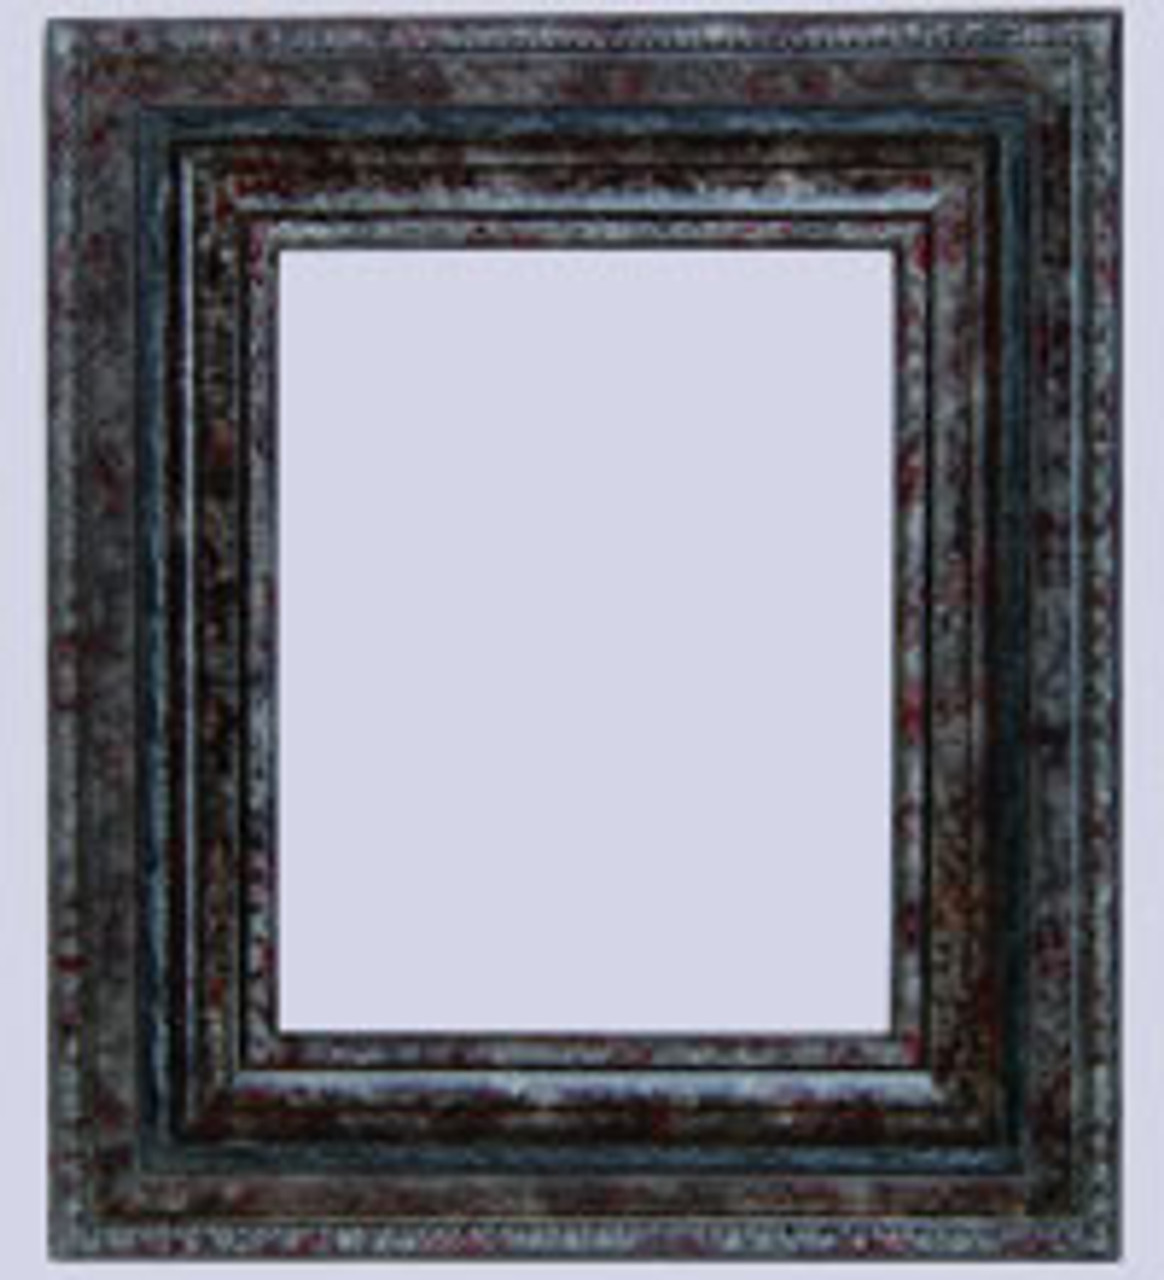 3 Inch Tuscani Wood Frame :20X26*